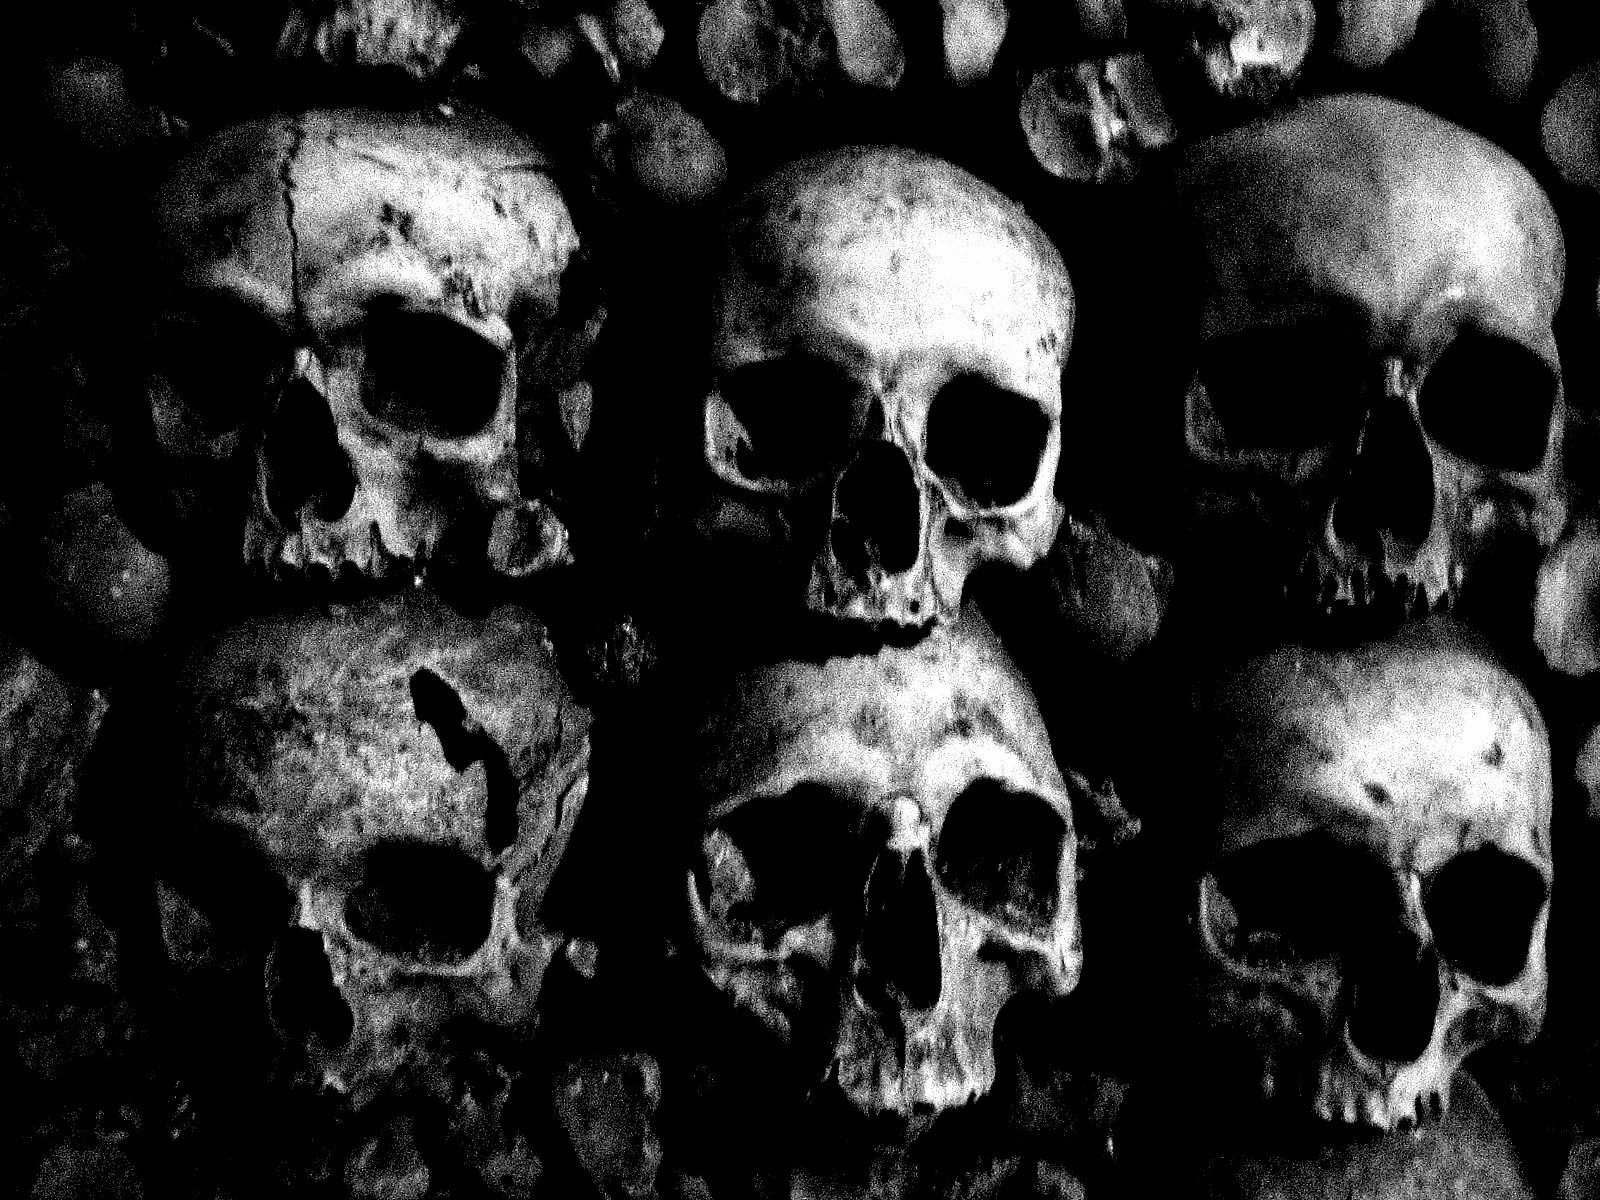 tumblr backgrounds black and white skulls